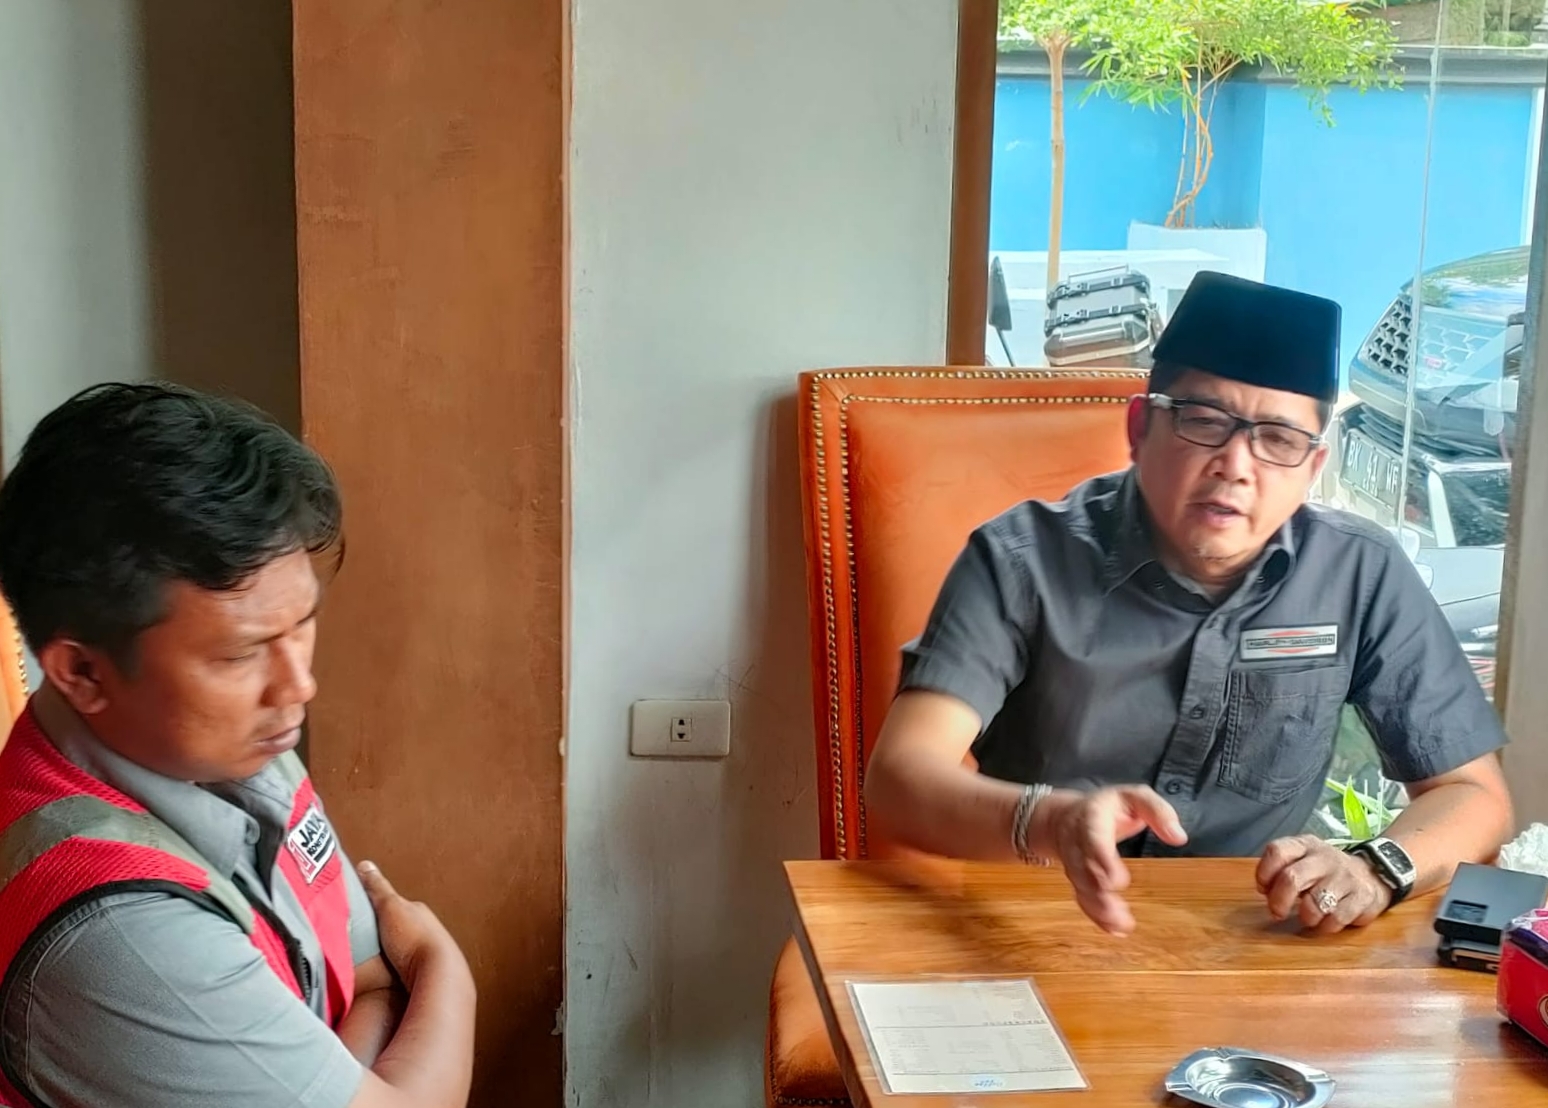 Ketua DPRD Madina Erwin Efendi Lubis S.H. saat ketemu dengan Manager Operasional PT jaya kontruksi beberapa hari yang lalu, fhoto : istimewa.